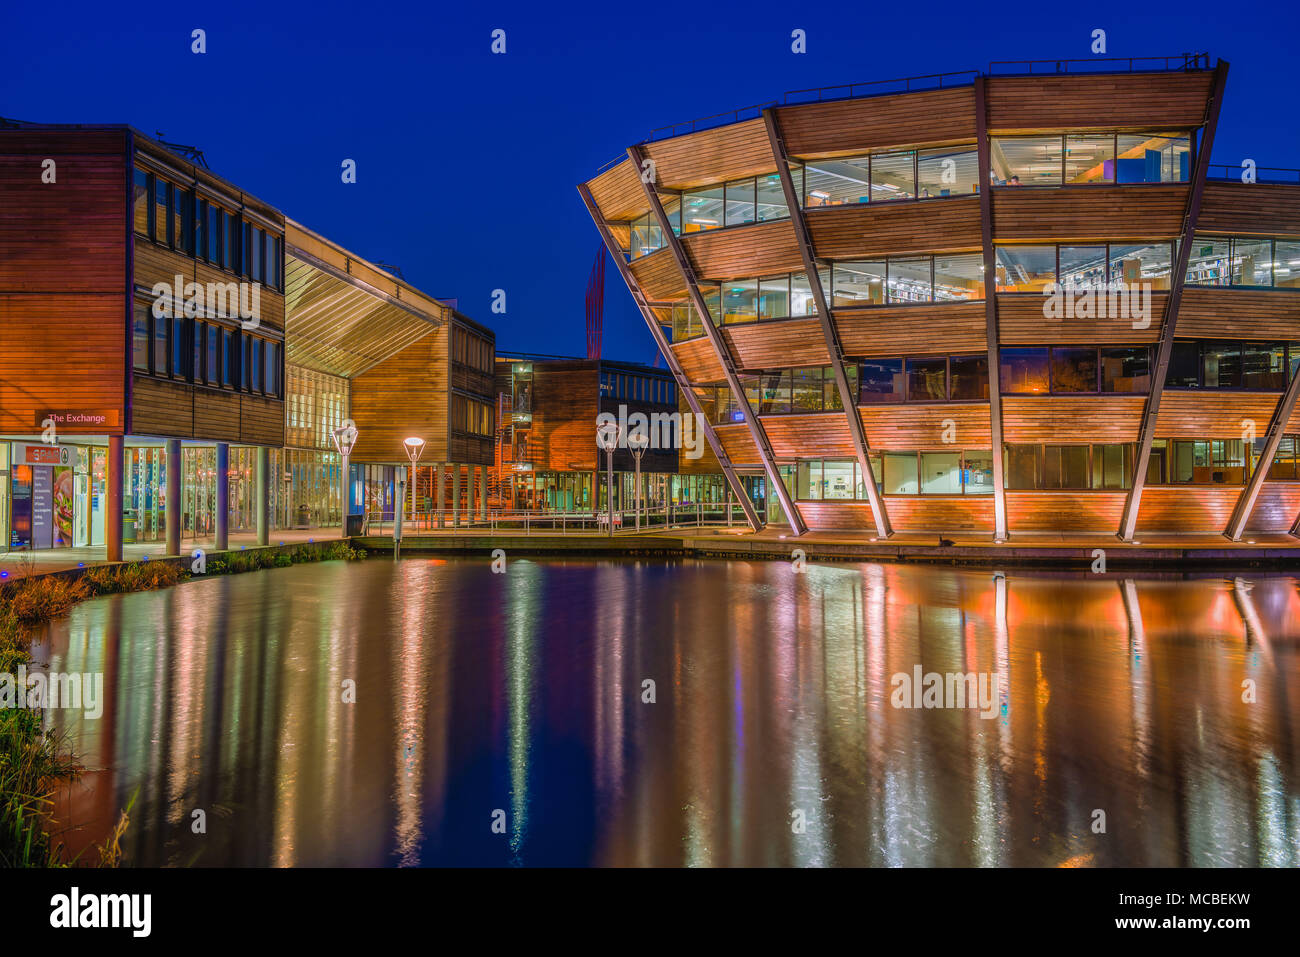 University of Nottingham - England Stock Photo